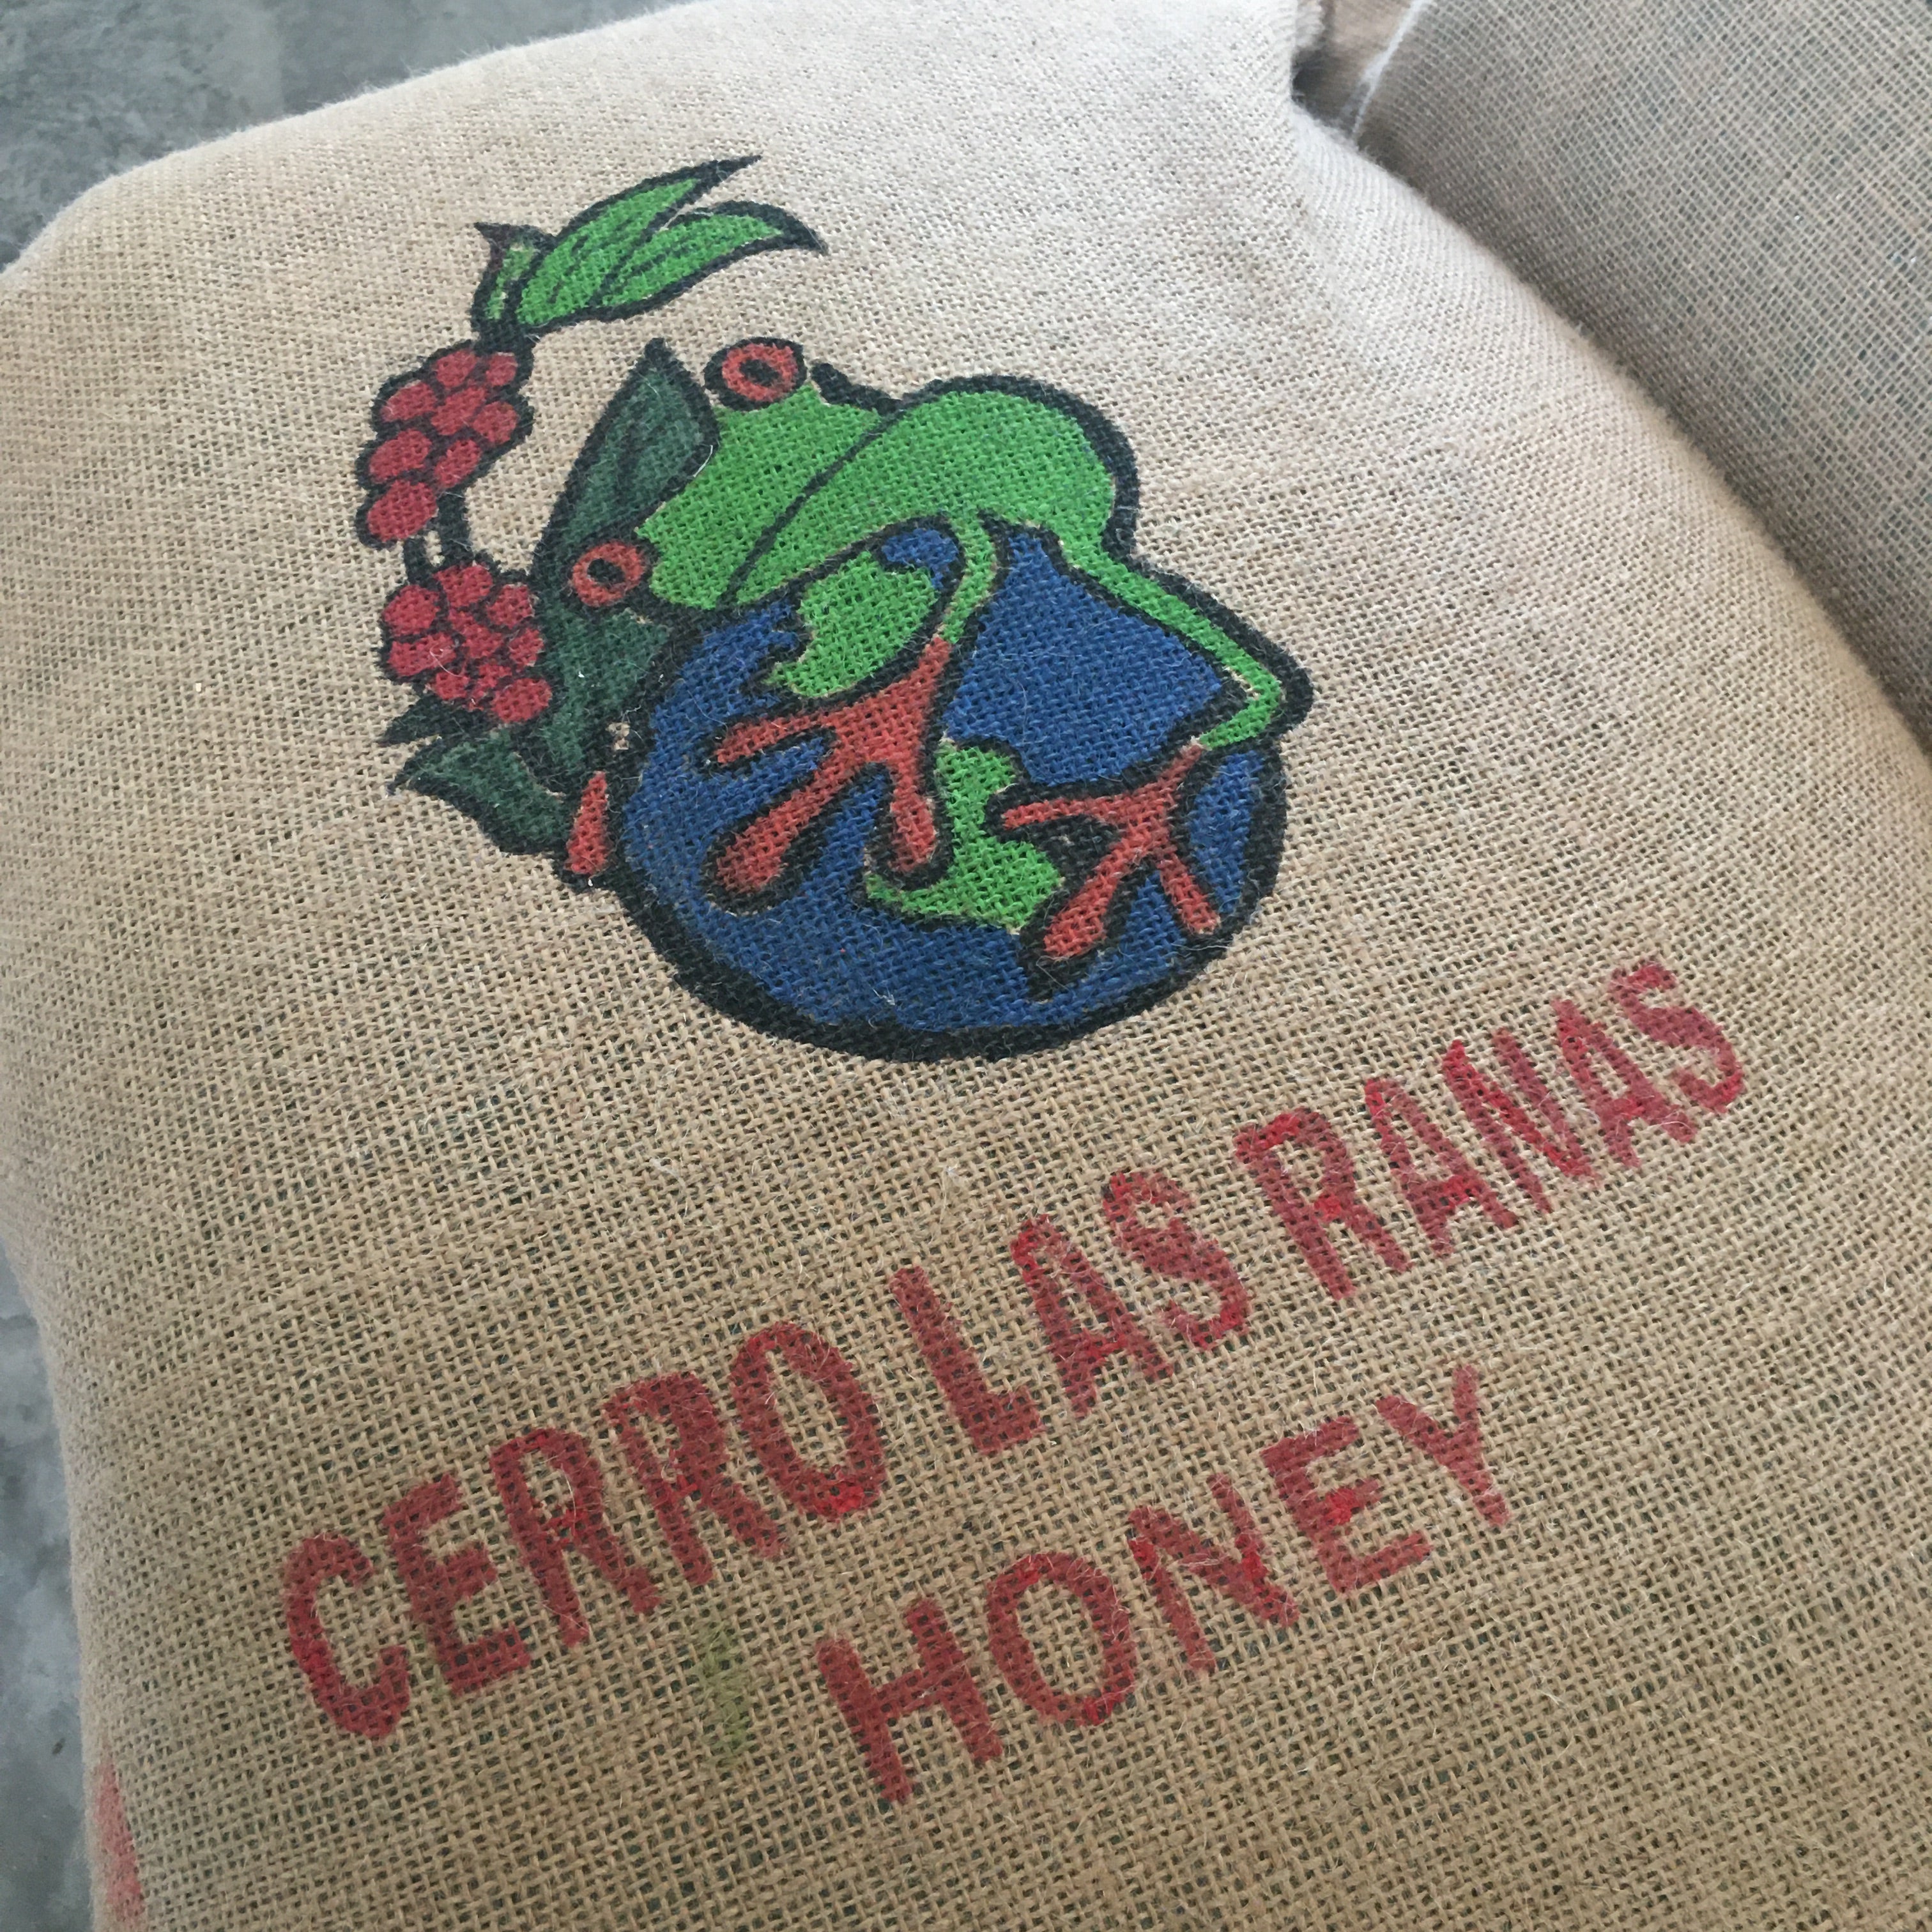 El Salvador - Cerro Las Ranas Honey